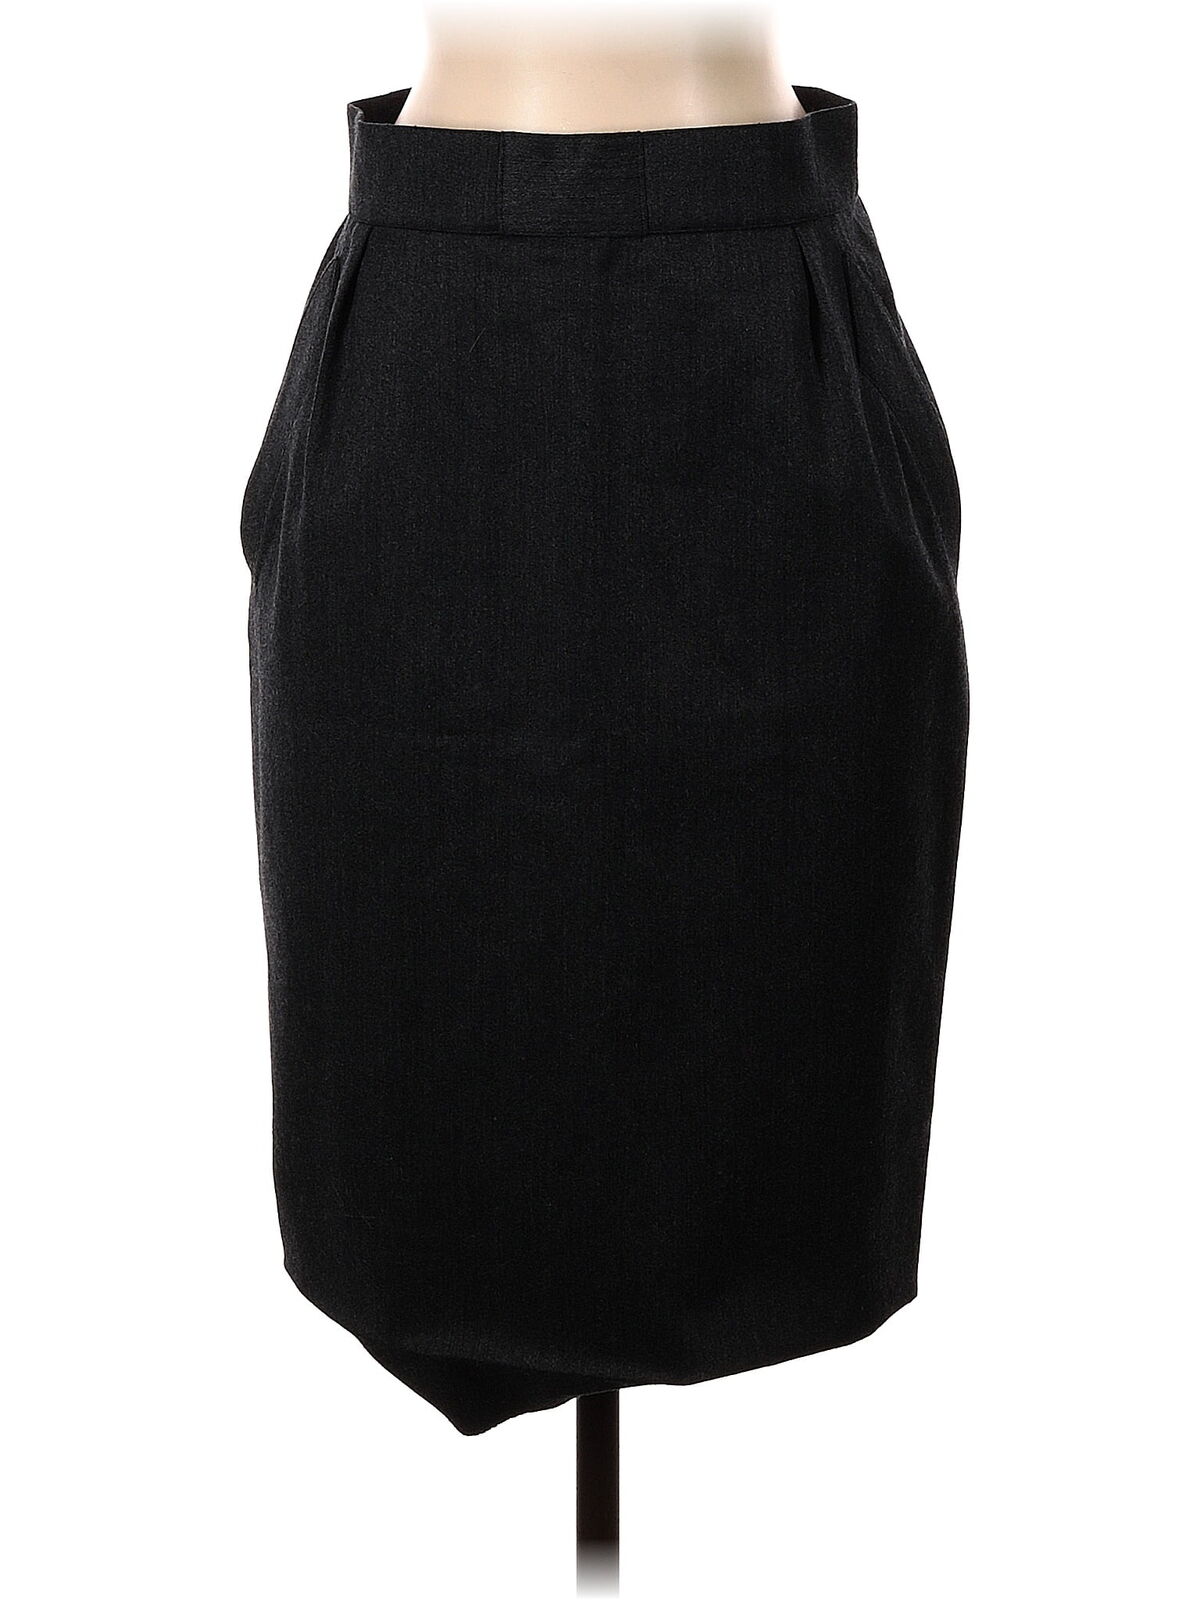 Thierry Mugler Women Black Casual Skirt 40 eur - image 1